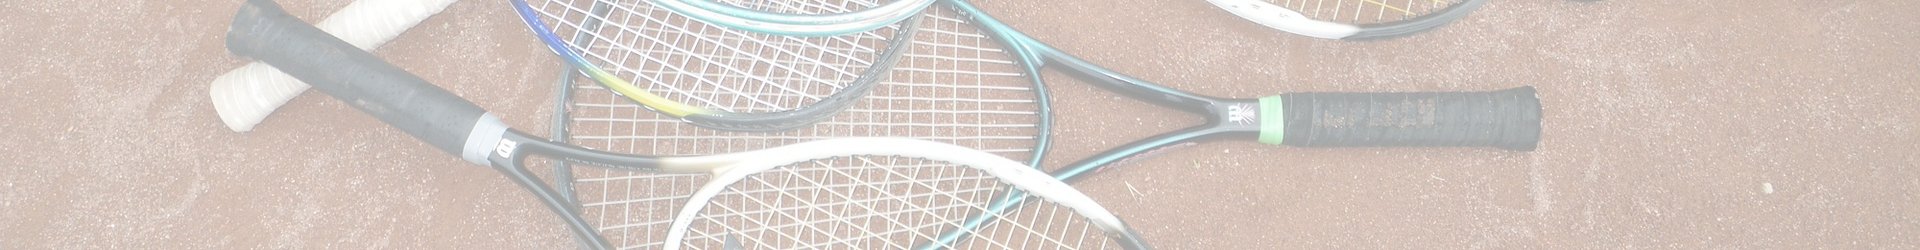 Tennis Rackets